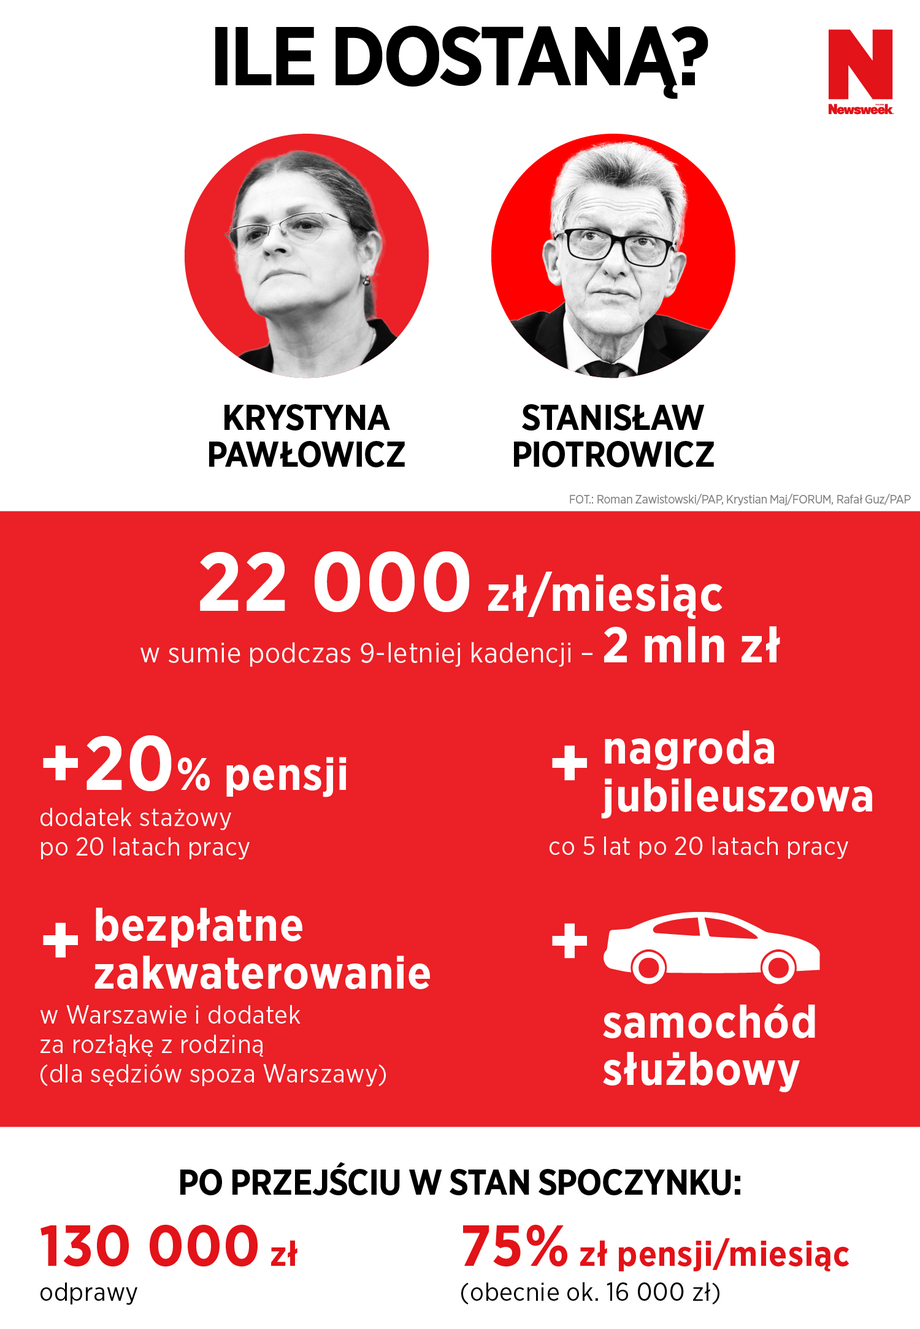 Pawłowicz i Piotrowicz. Pensje w TK